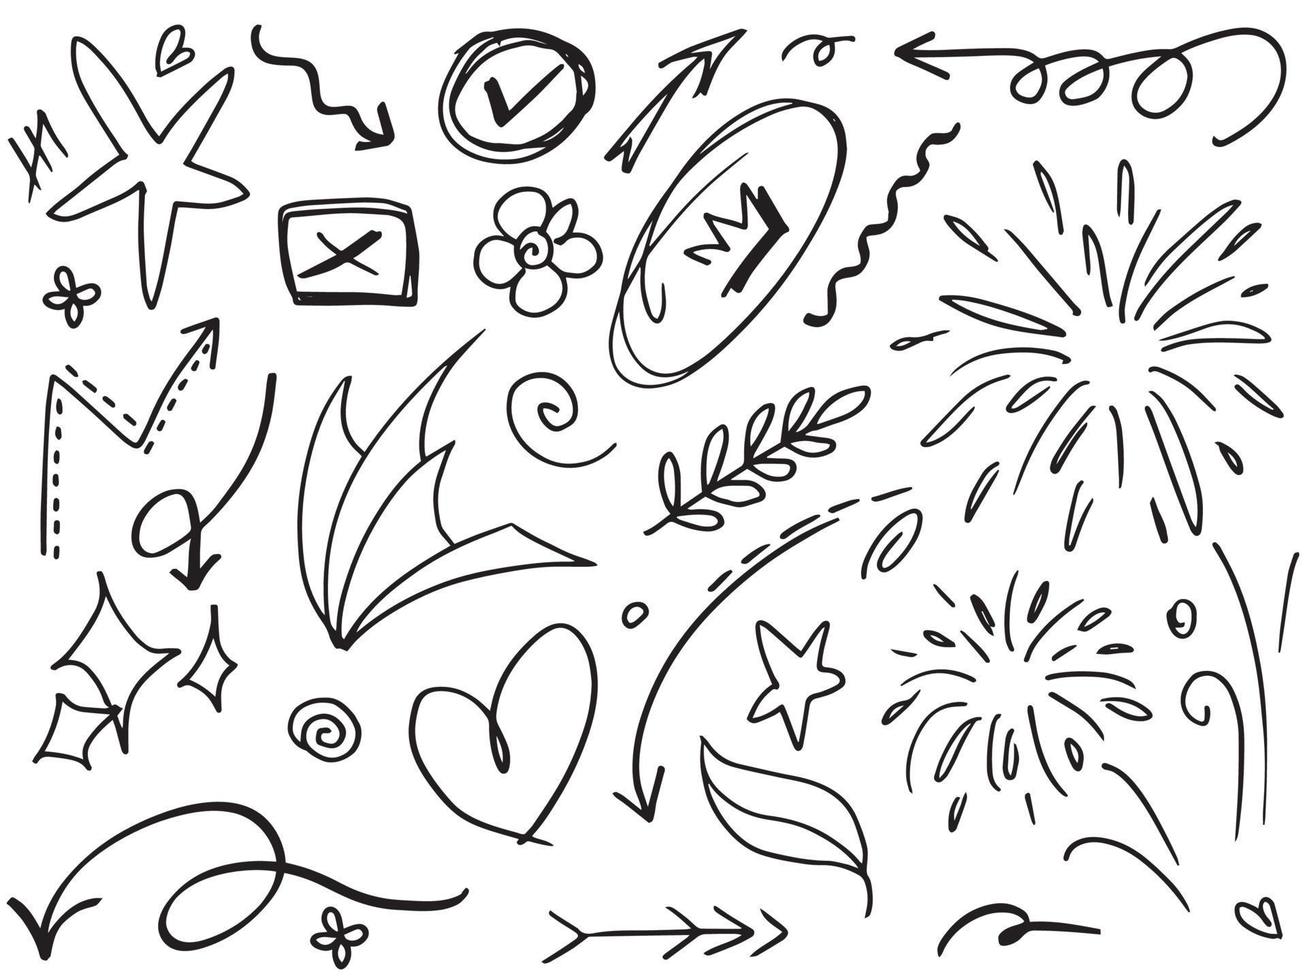 abstrakta pilar, band, kronor, hjärtan, explosioner och andra element i handritad stil för konceptdesign. doodle illustration. vektor mall för dekoration